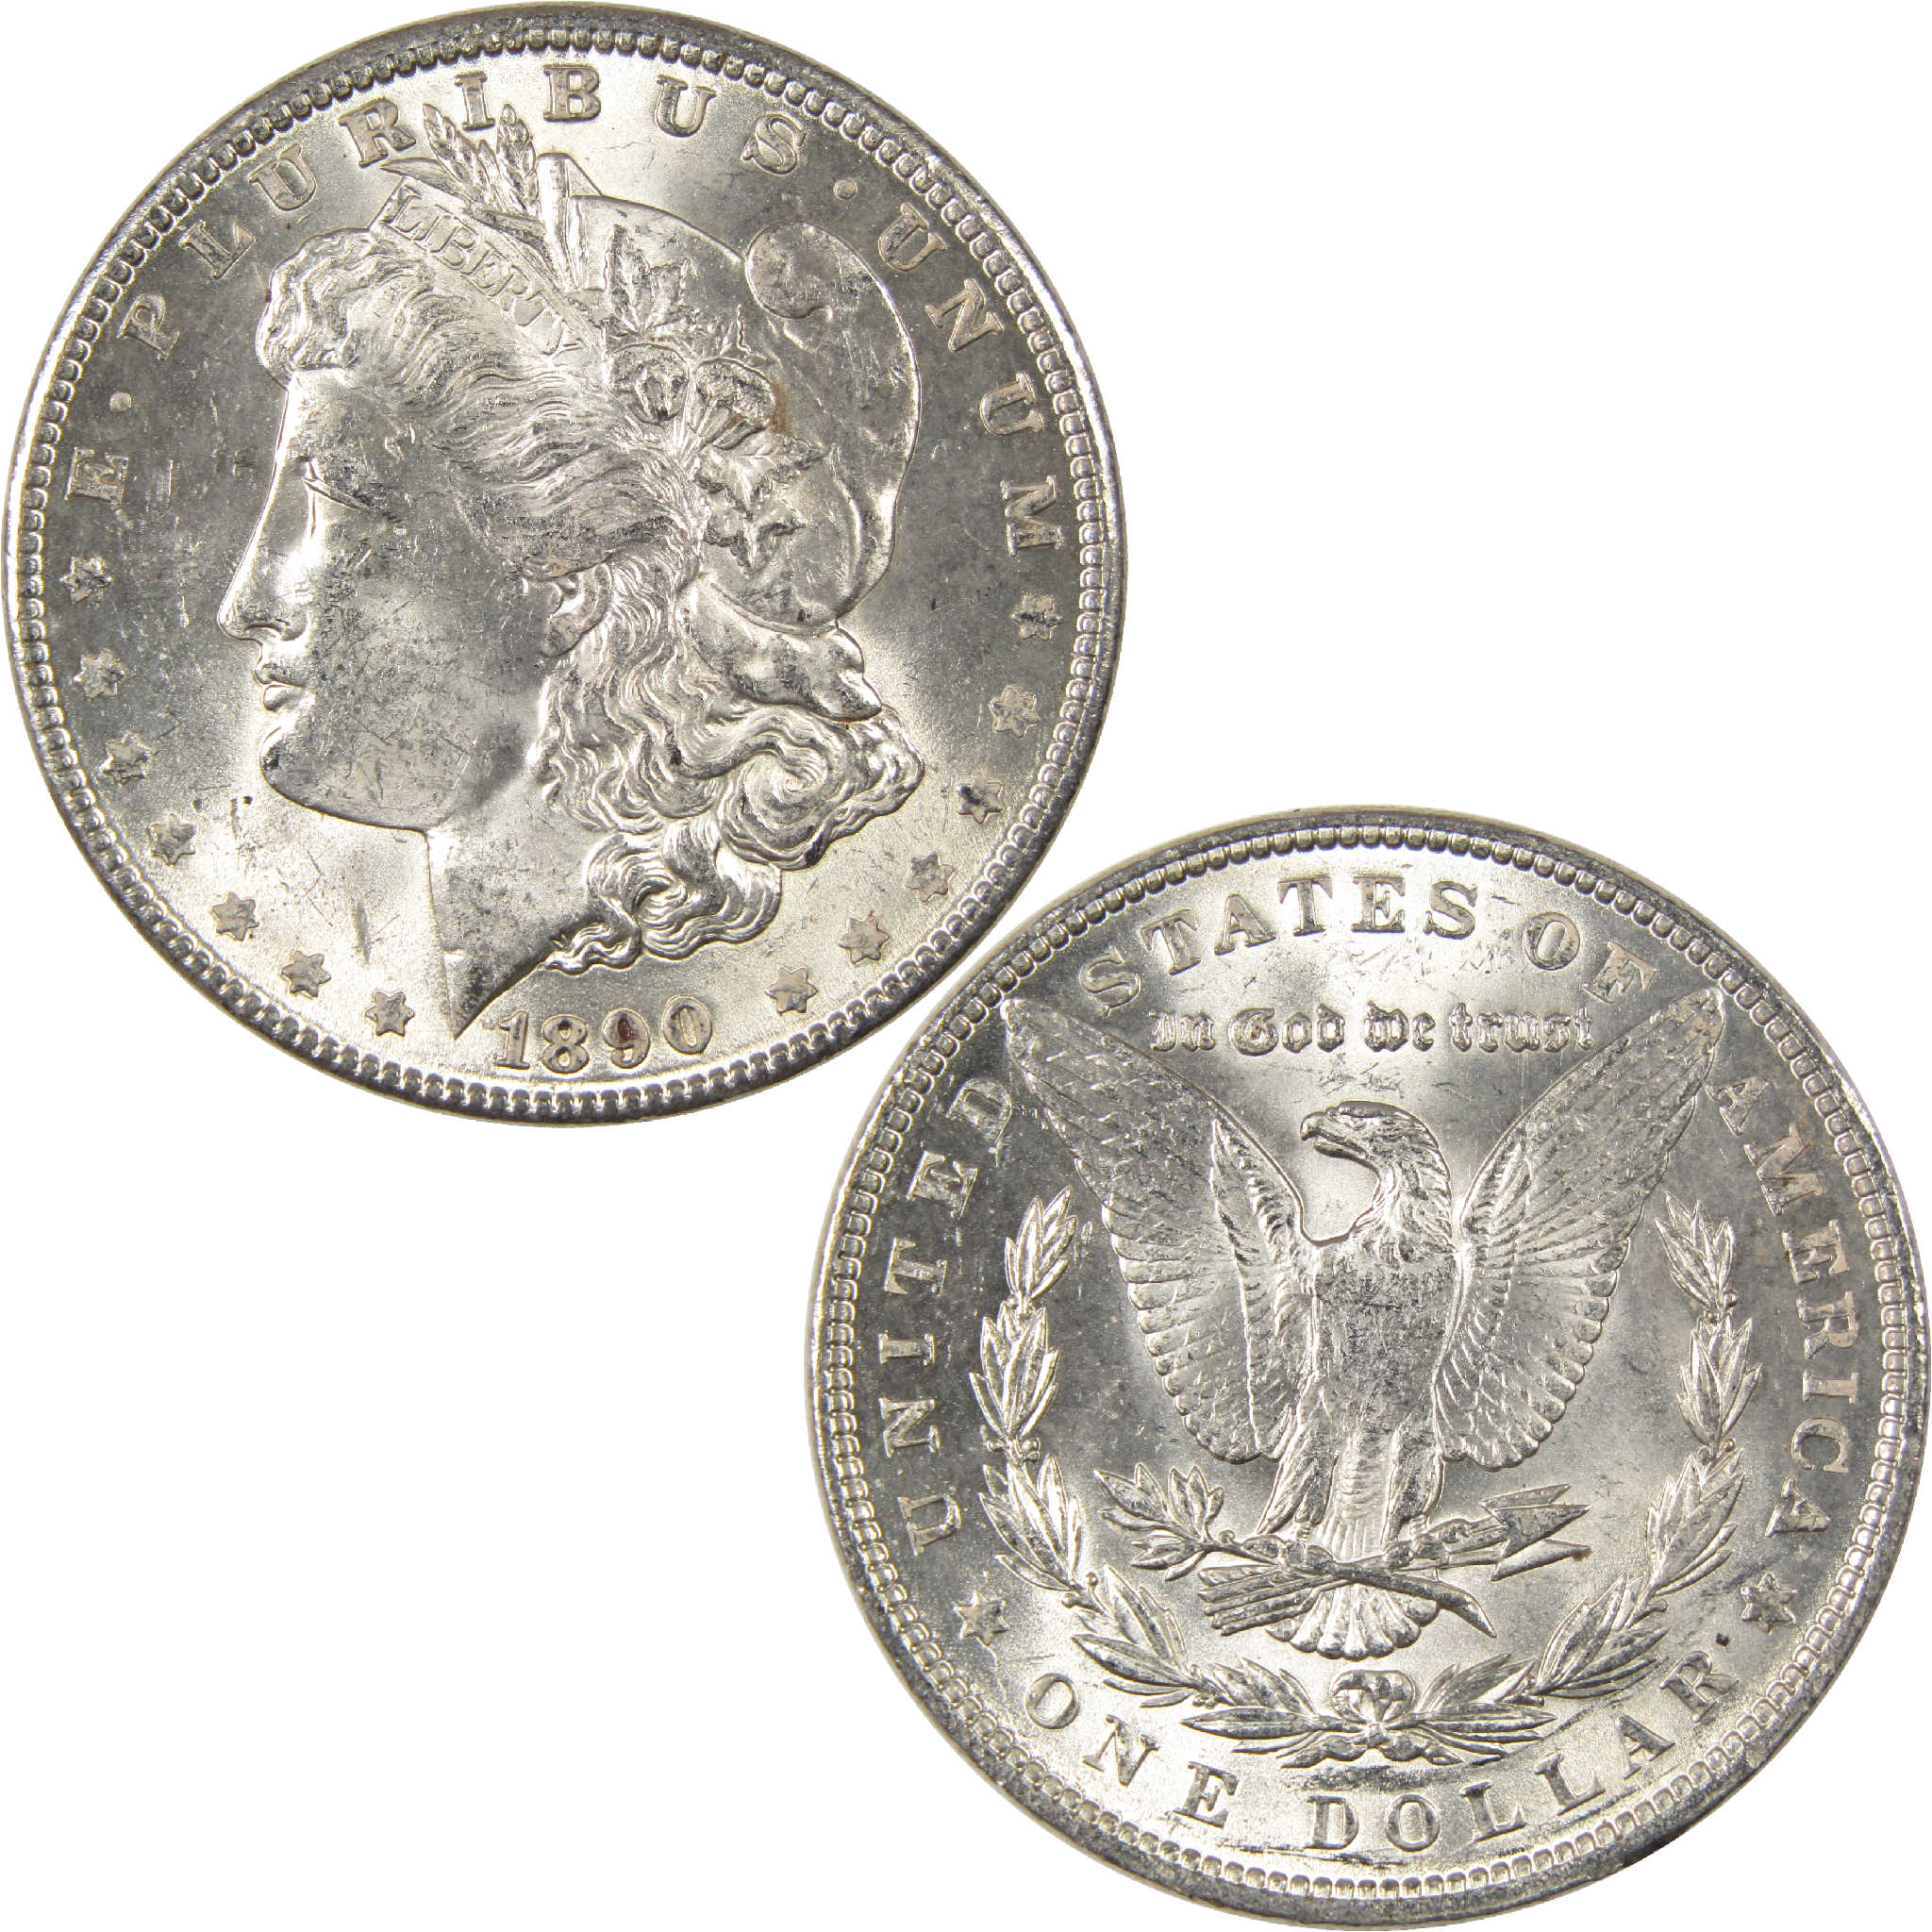 1890 Morgan Dollar Uncirculated Silver $1 Coin - Morgan coin - Morgan silver dollar - Morgan silver dollar for sale - Profile Coins &amp; Collectibles